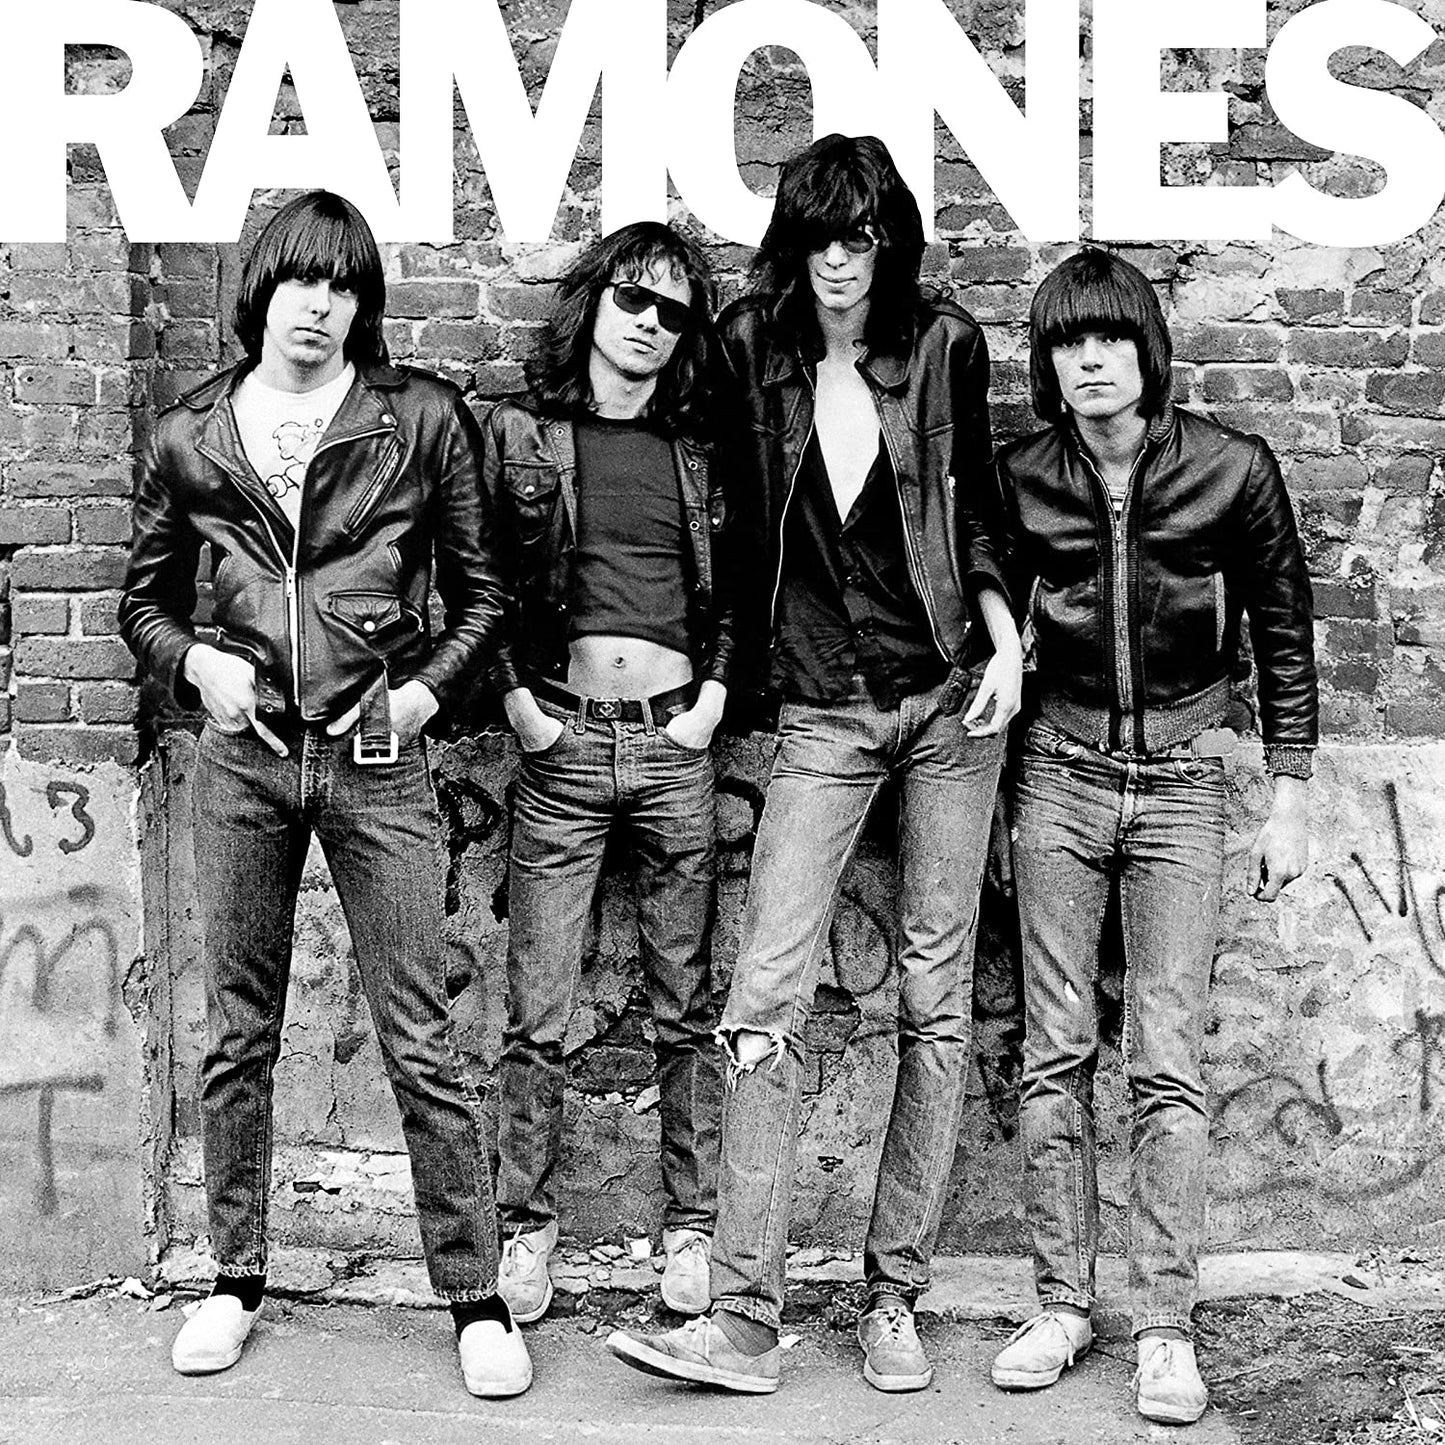 The Ramones Iconic Debut Album on Vinyl